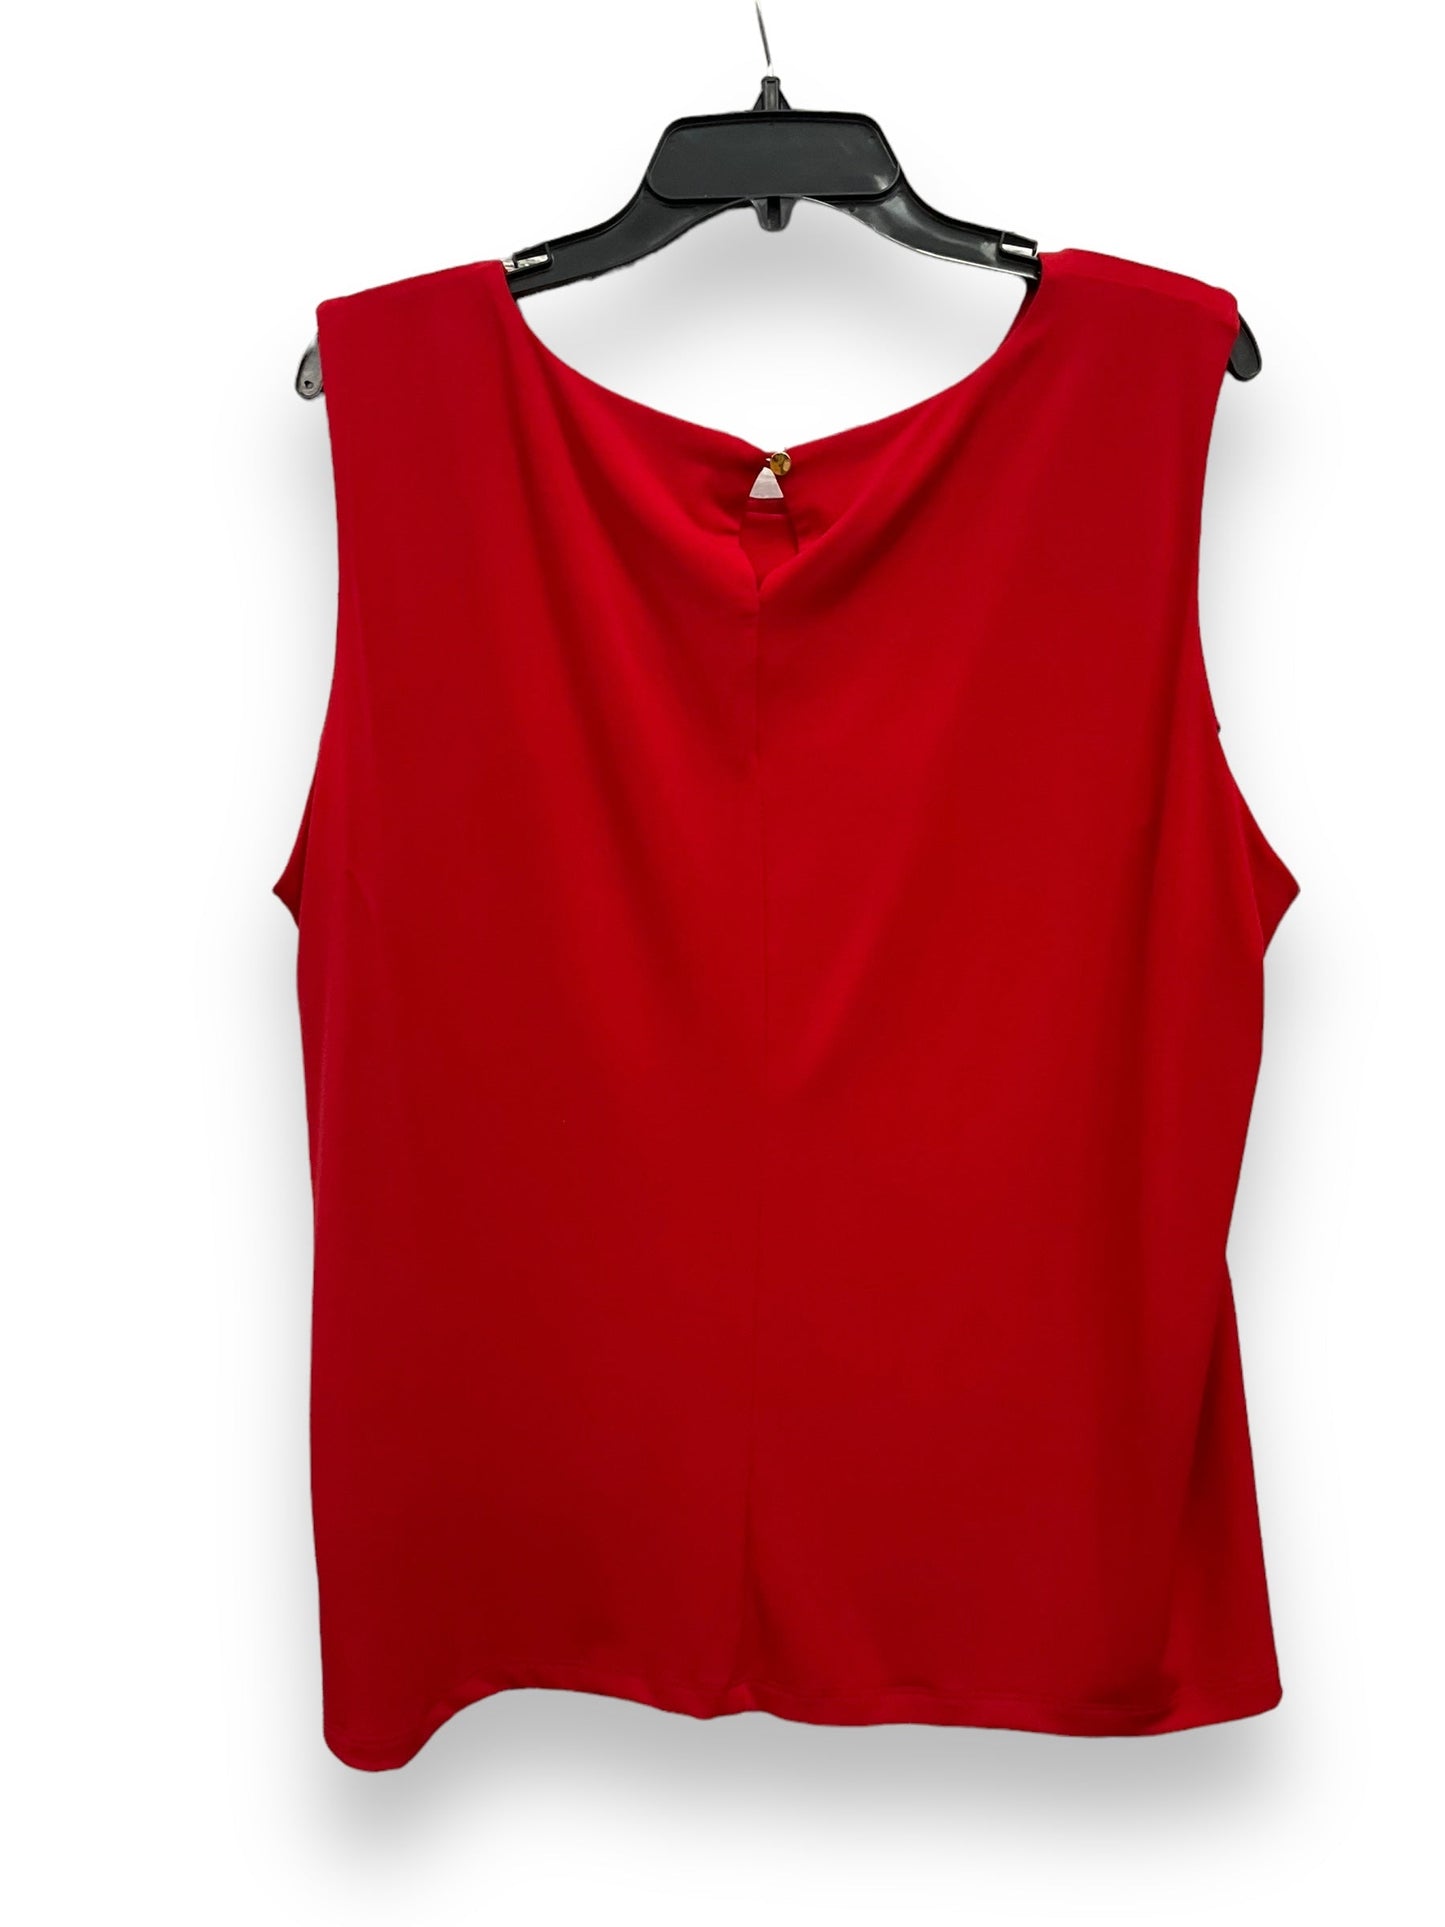 Red Blouse Sleeveless Calvin Klein, Size 2x